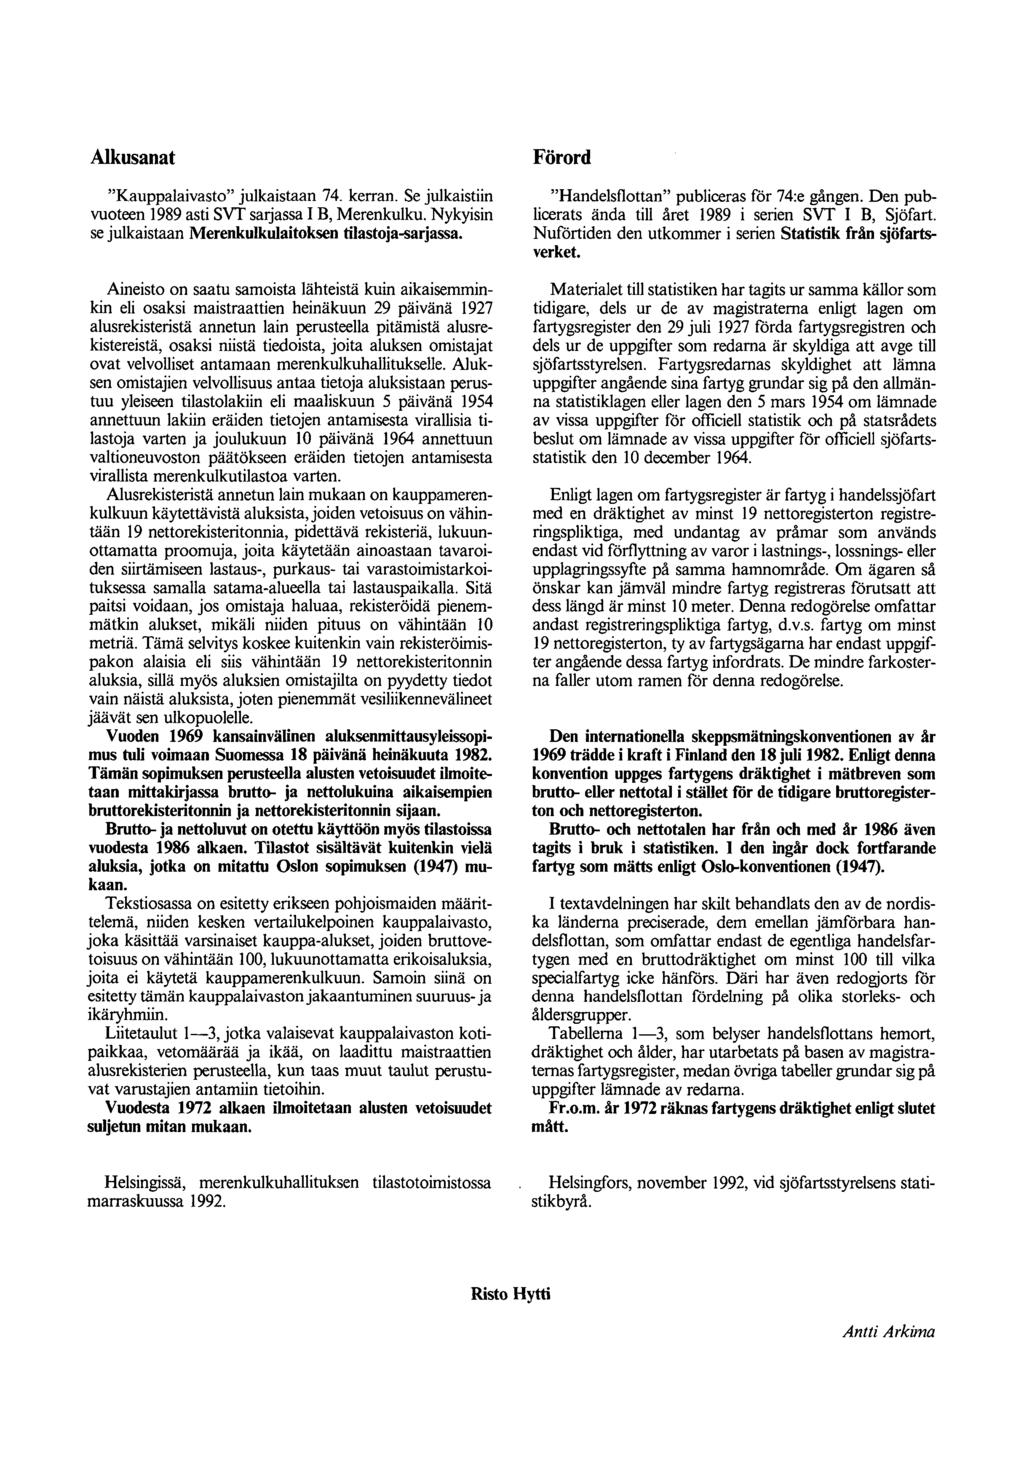 Alkusanat Kauppalaivasto julkaistaan 74. kerran. Se julkaistiin vuoteen 1989 asti SVT Saijassa IB, Merenkulku. Nykyisin se julkaistaan Merenkulkulaitoksen tilastoja-sarjassa.